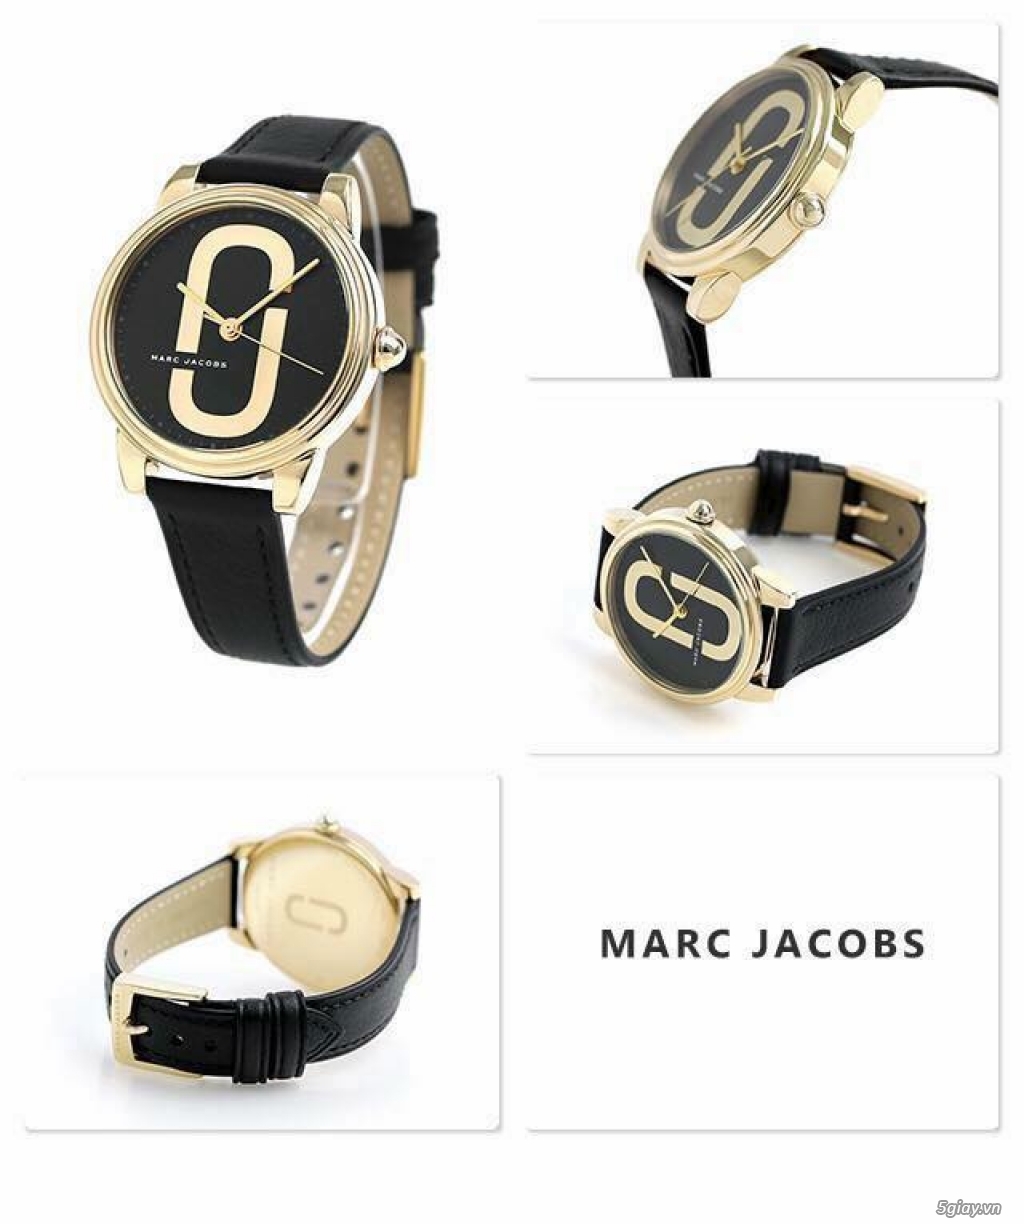 Đồng hồ Emporio Armani, Skagen, Marc Jacobs xách tay, giá siêu rẻ!!!! - 43